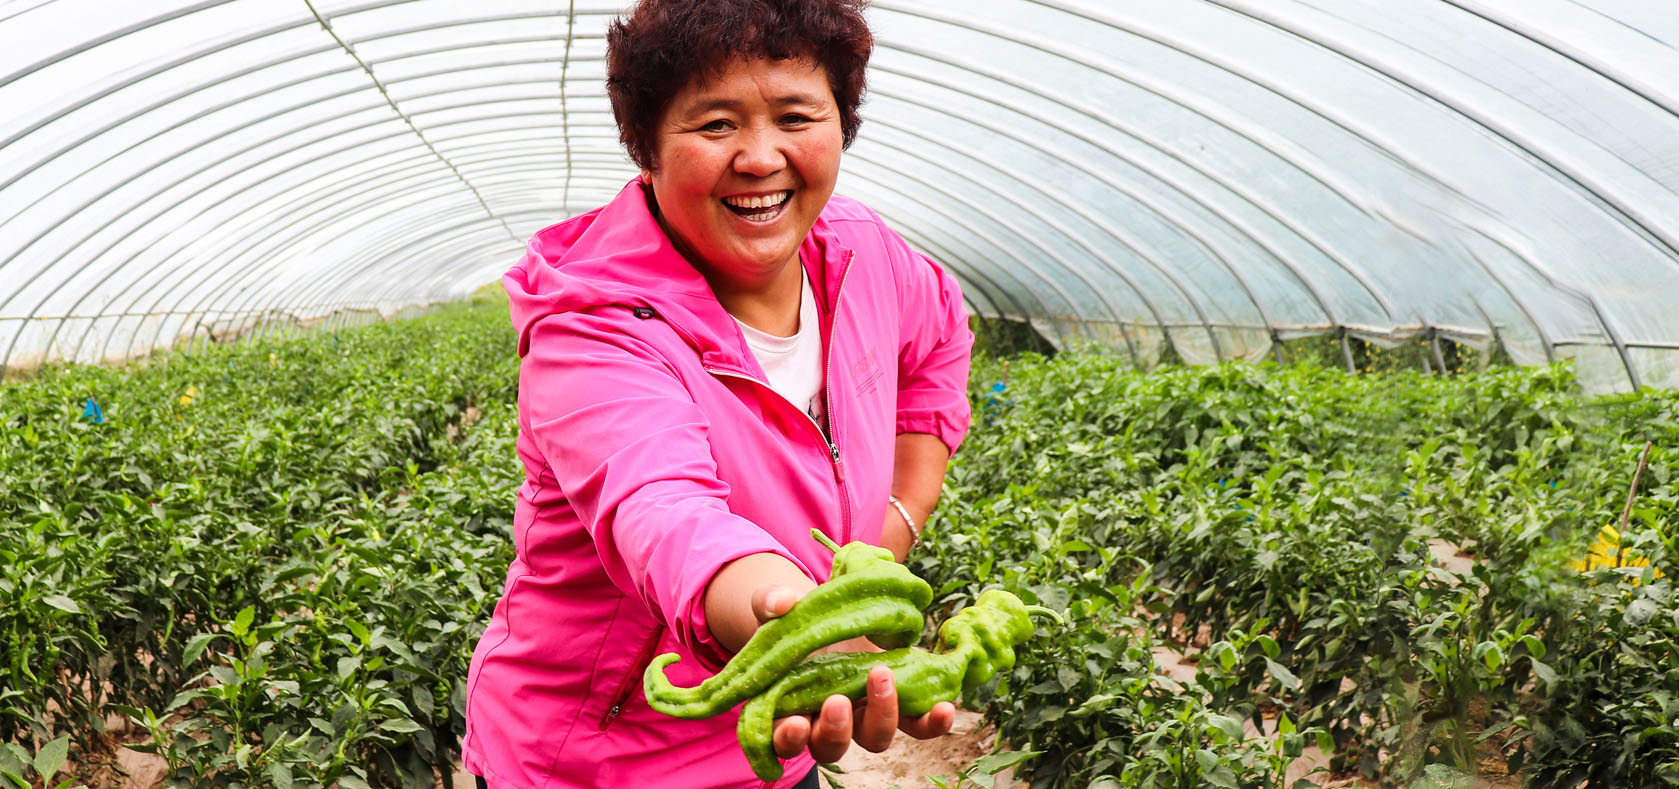 Ms. Tie Lingmei shows off produce grown by the collective. Photo: UN Women/Jiayuan Wang